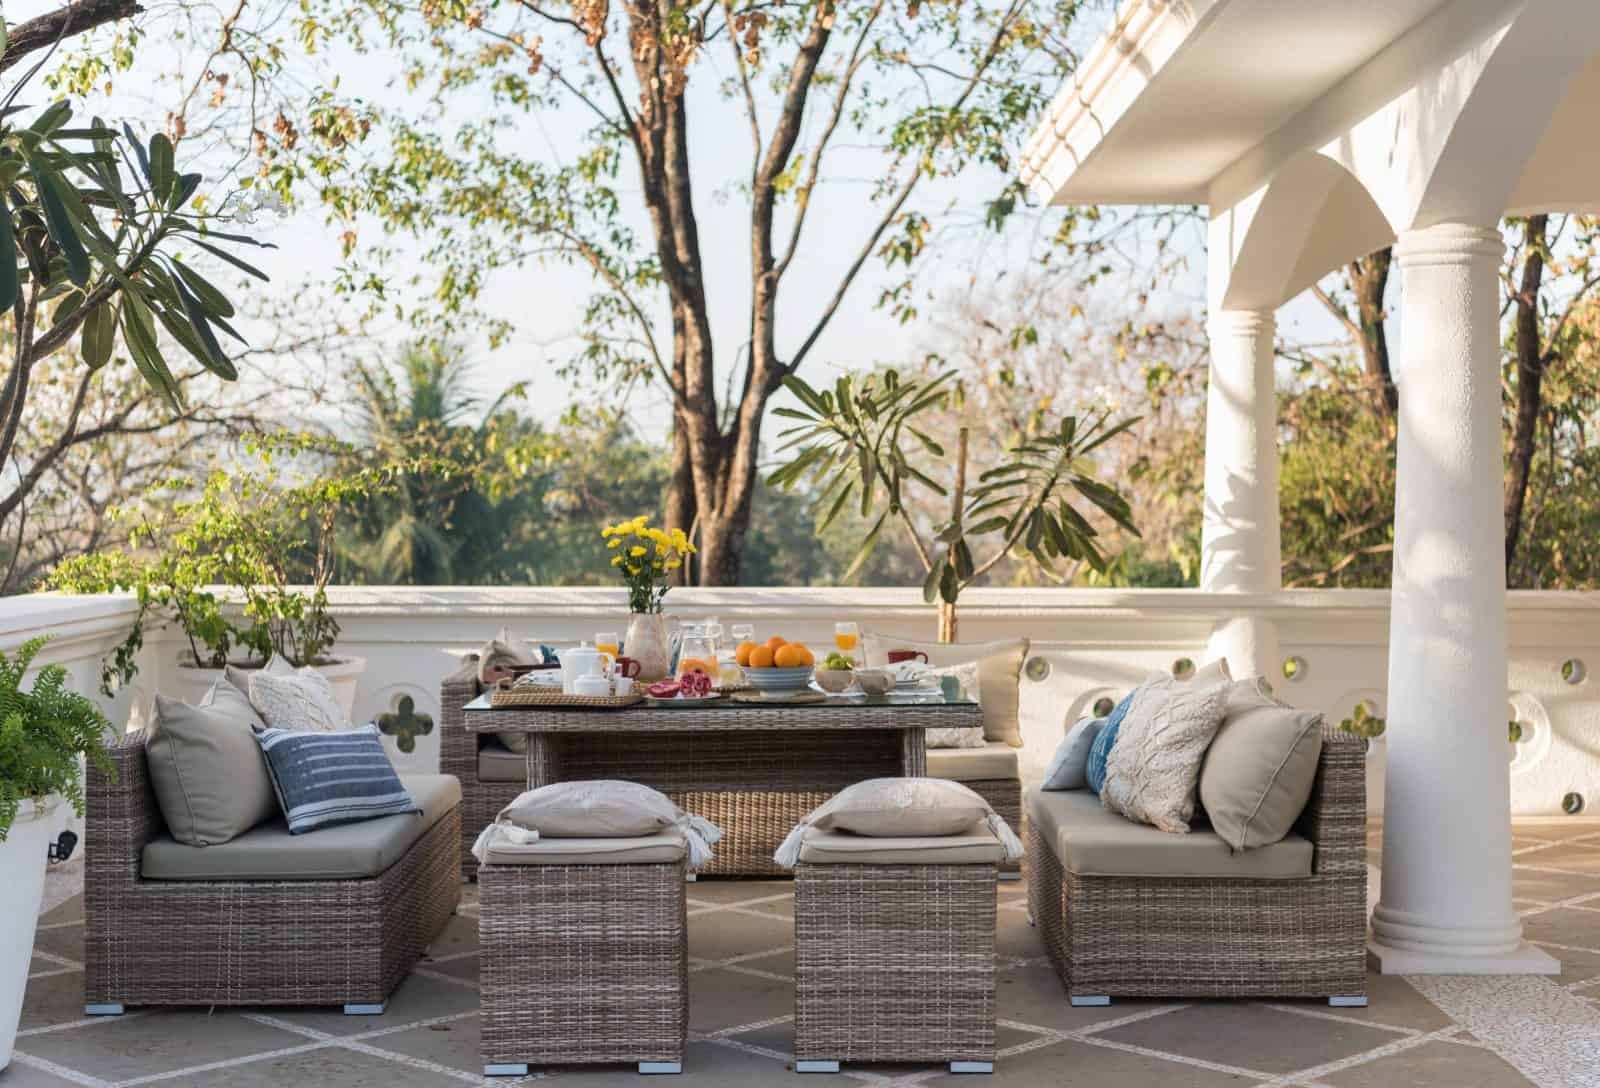 Villa Vivre - Private Pool Villa for Sale in Goa - Romantic Terrace View